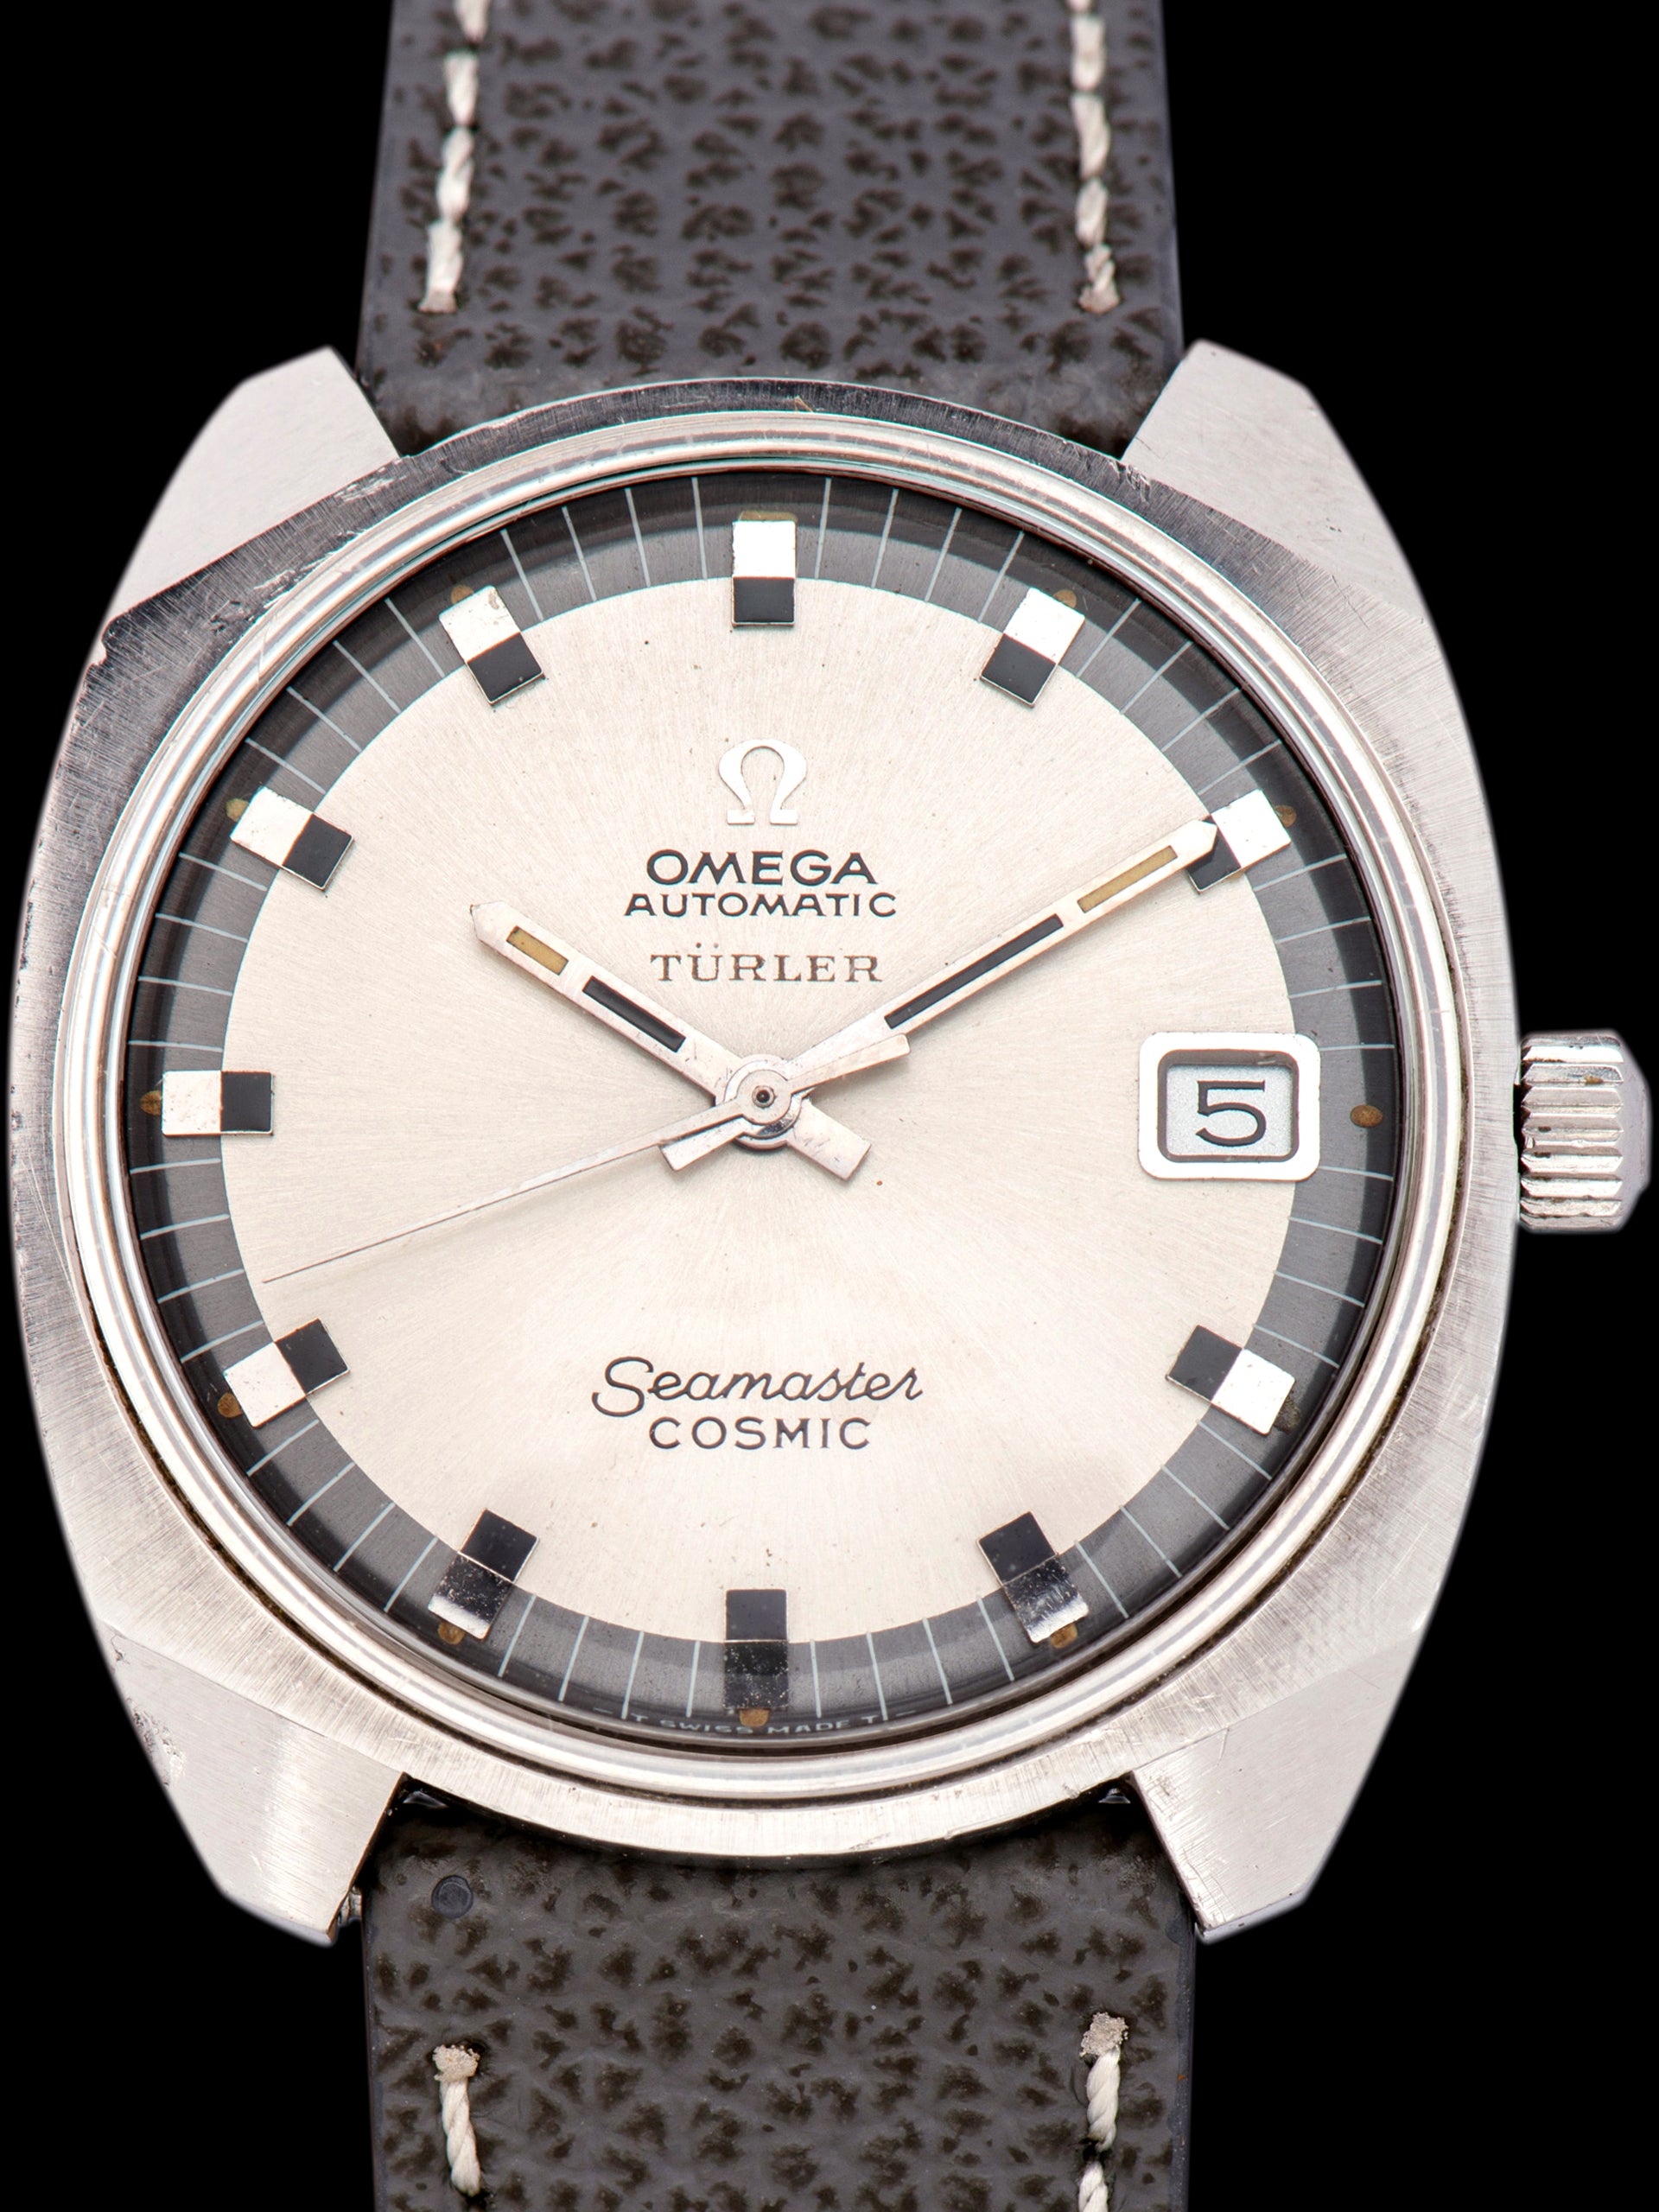 1970s Omega Seamaster Cosmic (Ref. 166.022) "Turler"